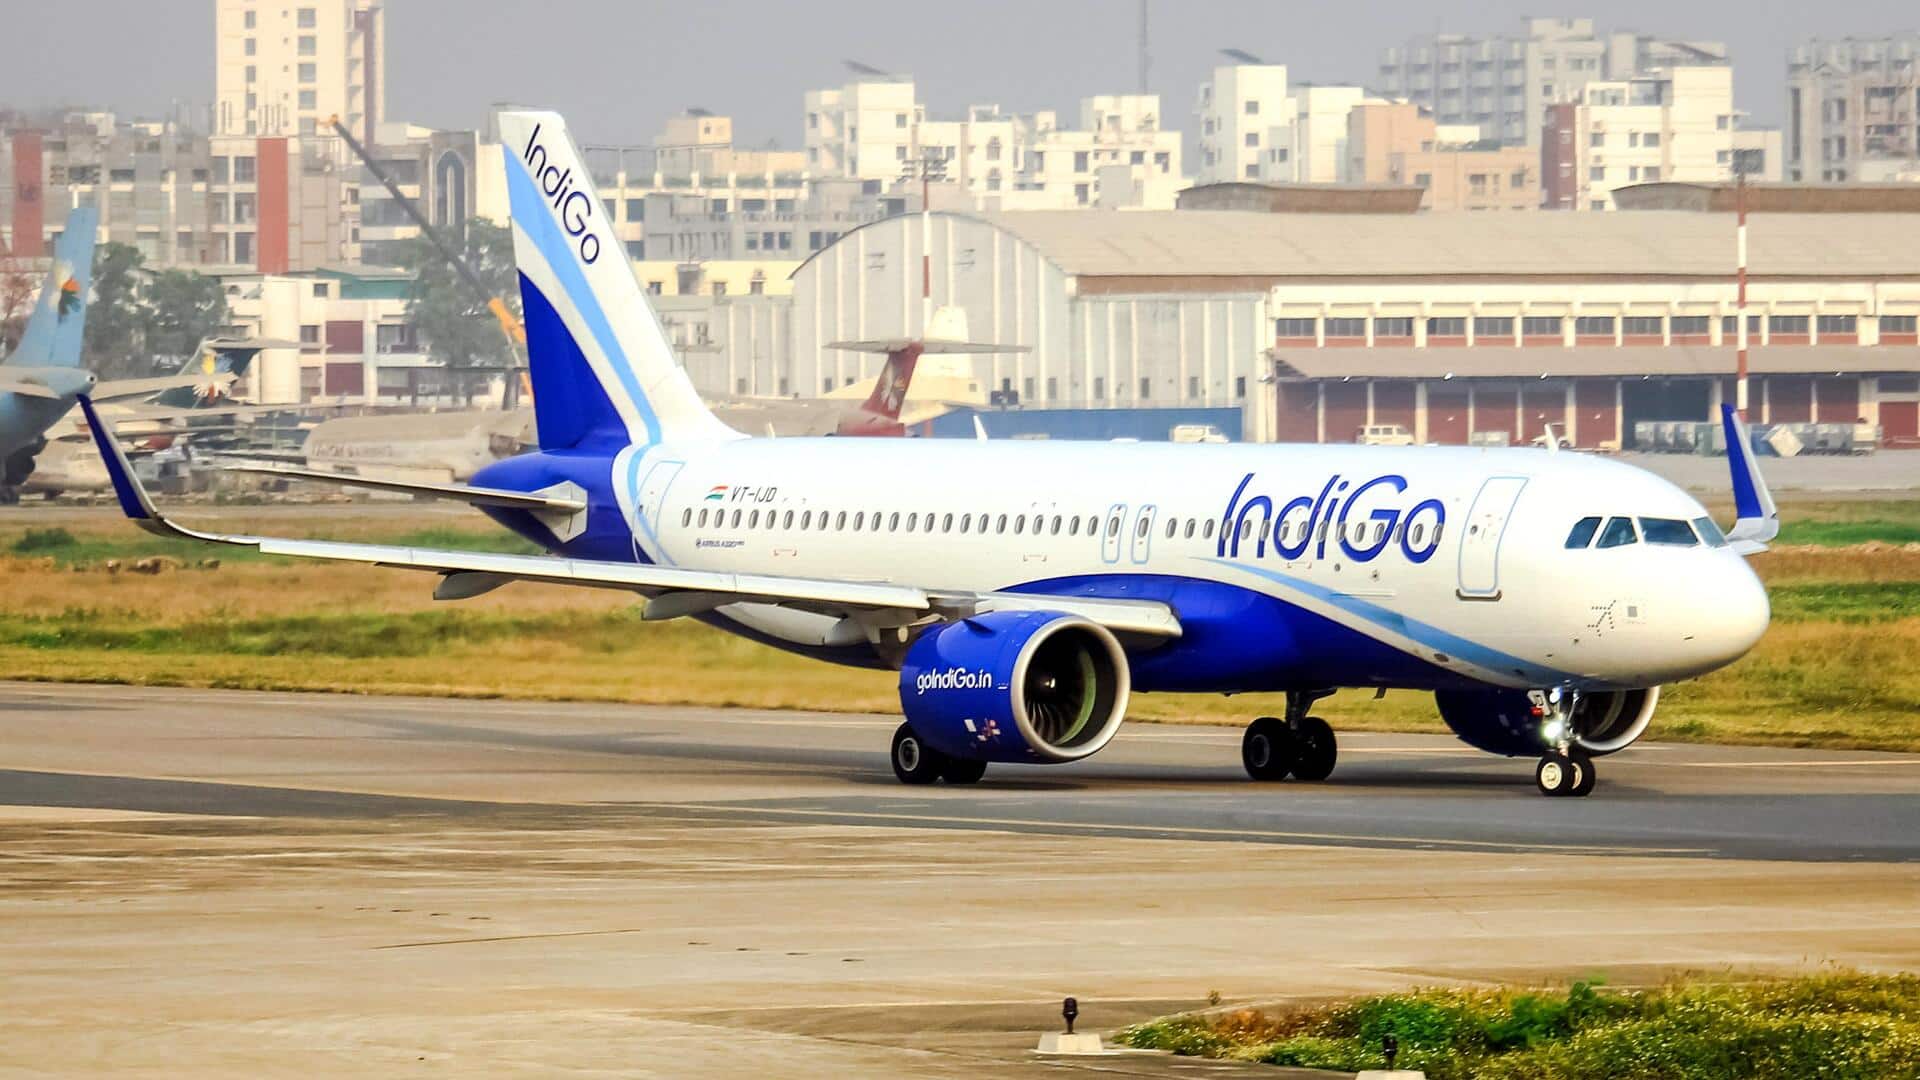 दिल्ली हवाई अड्डा: उड़ान रद्द होने पर यात्रियों का हंगामा, "इंडिगो बंद करो" के नारे लगाए